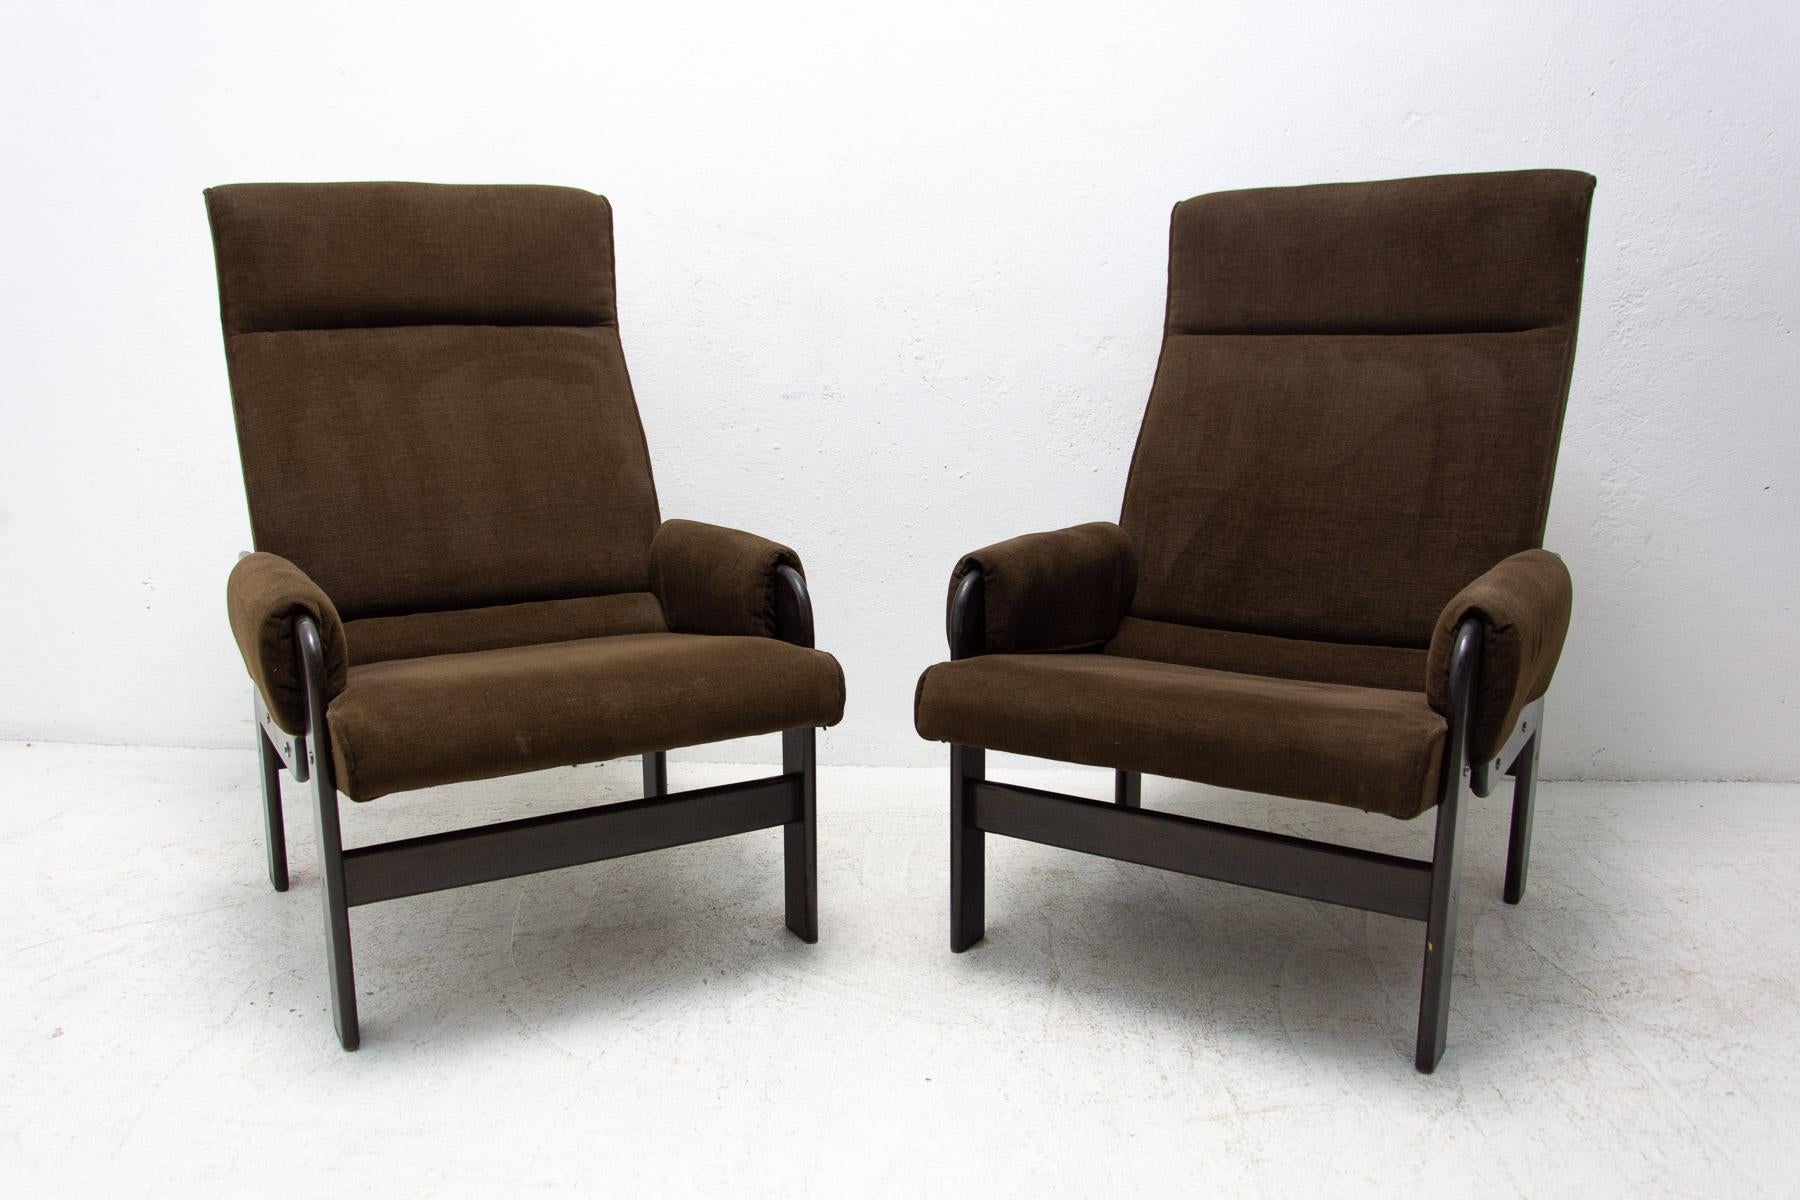 Ces fauteuils de style scandinave du milieu du siècle ont été fabriqués dans les années 1970.

Il est tapissé de tissu. La structure est en bois. Les chaises sont en très bon état vintage, sans aucun dommage.

Le prix correspond à la